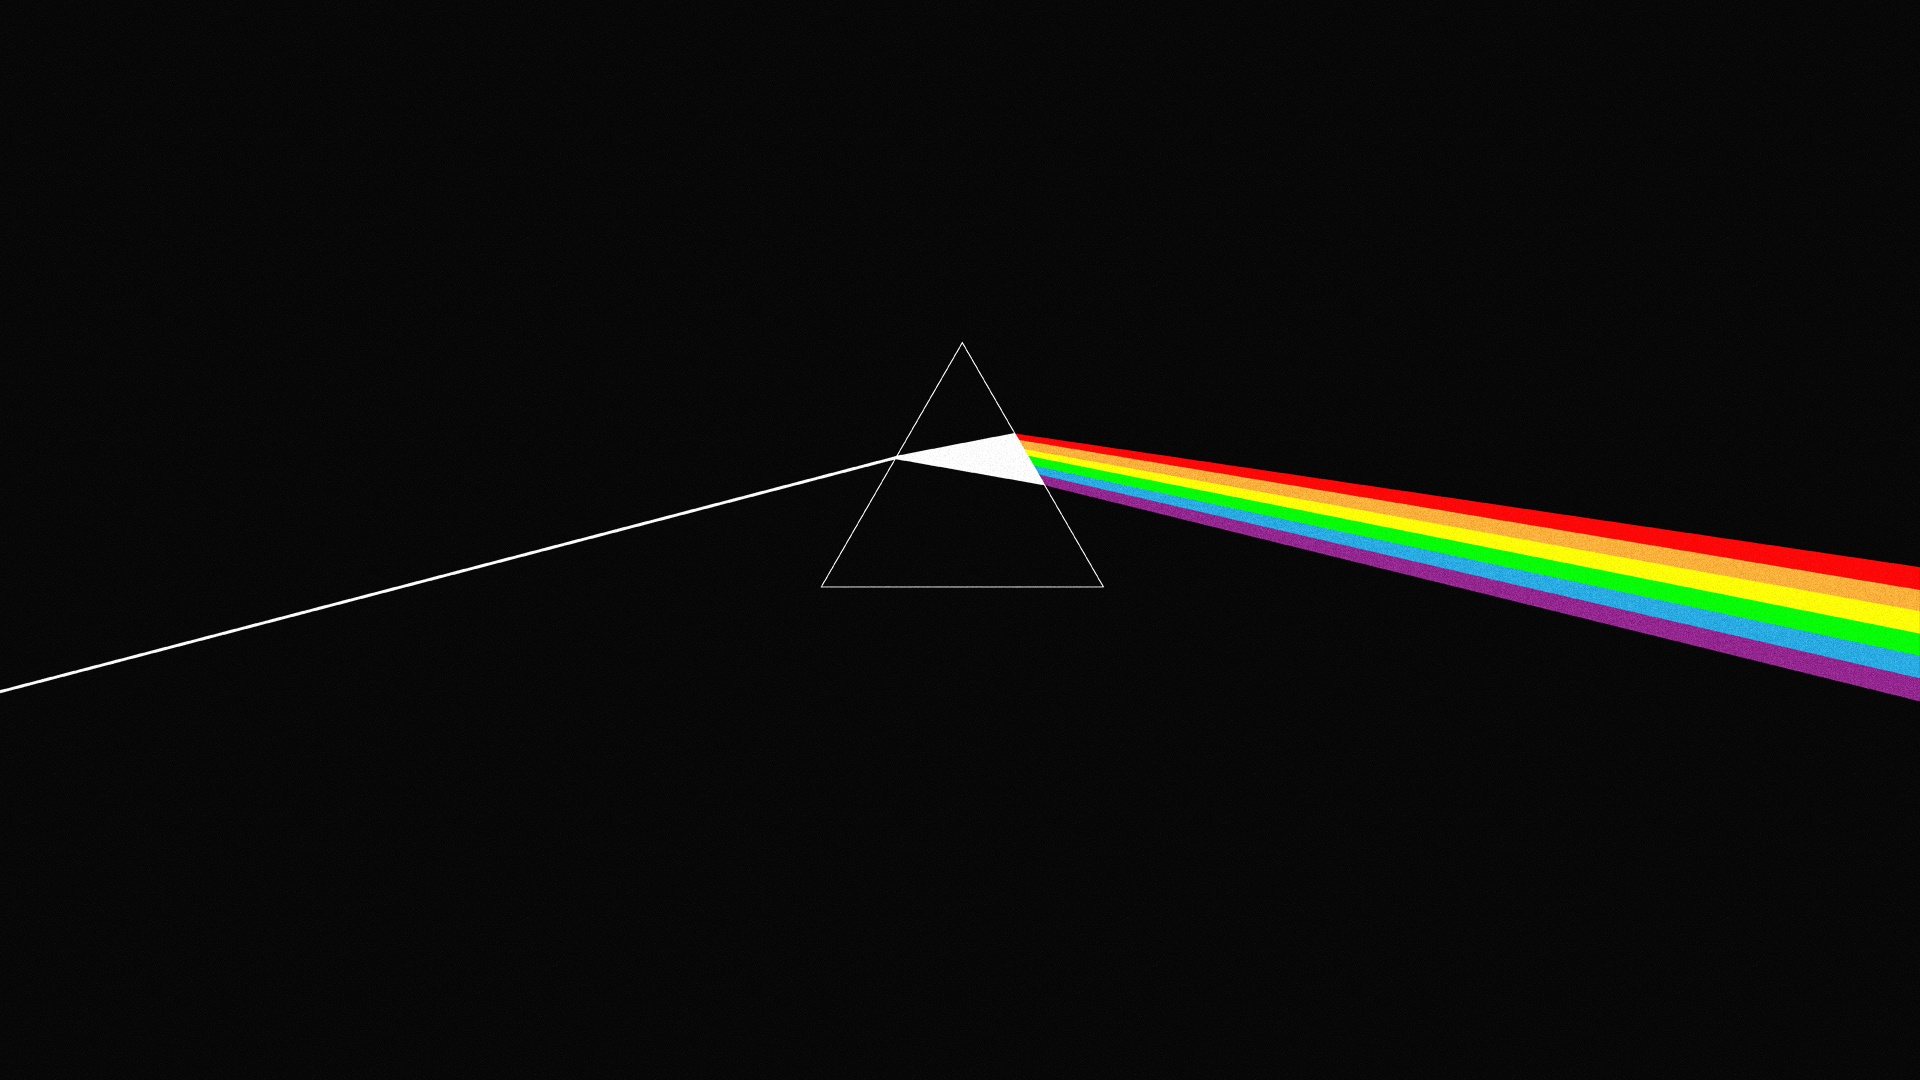 Dark Side Pink Floyd Wallpaper HD And Image Cute